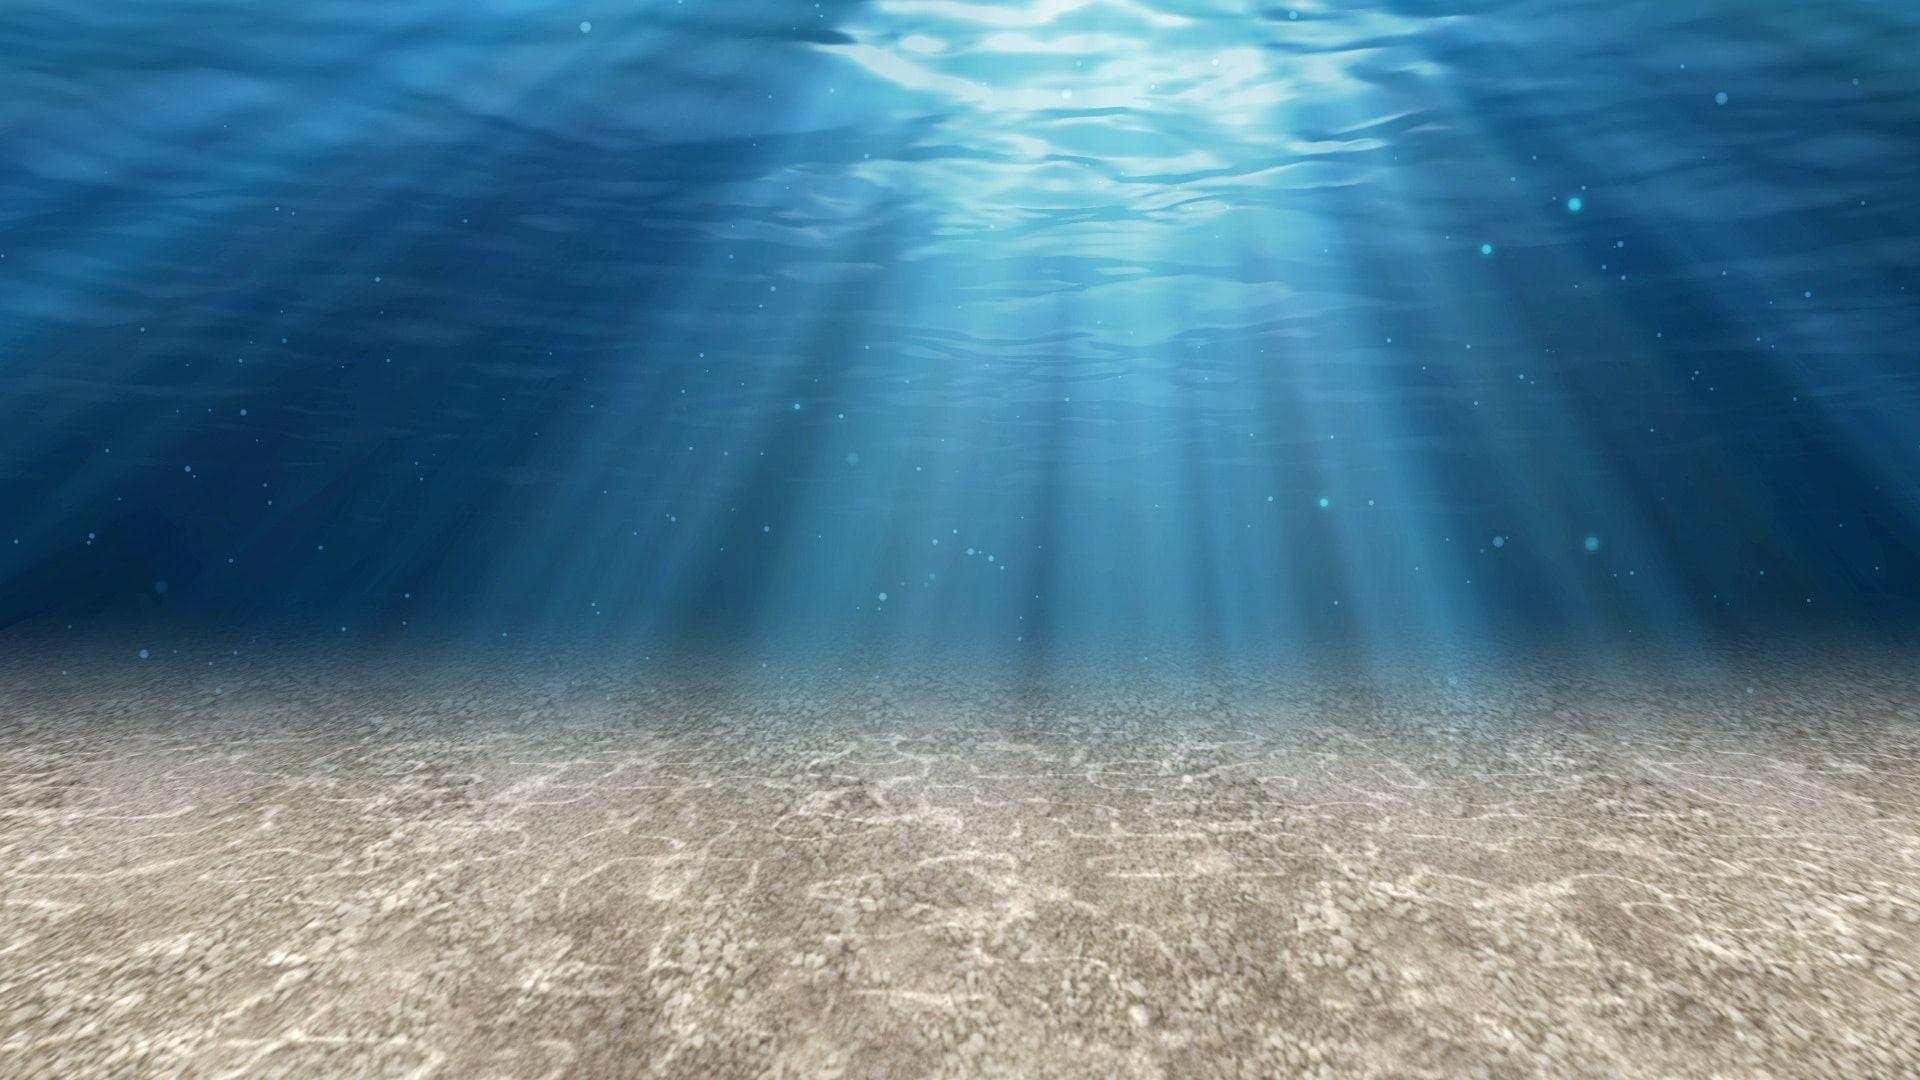 4K Ocean Floor Wallpapers - Top Free 4K Ocean Floor Backgrounds